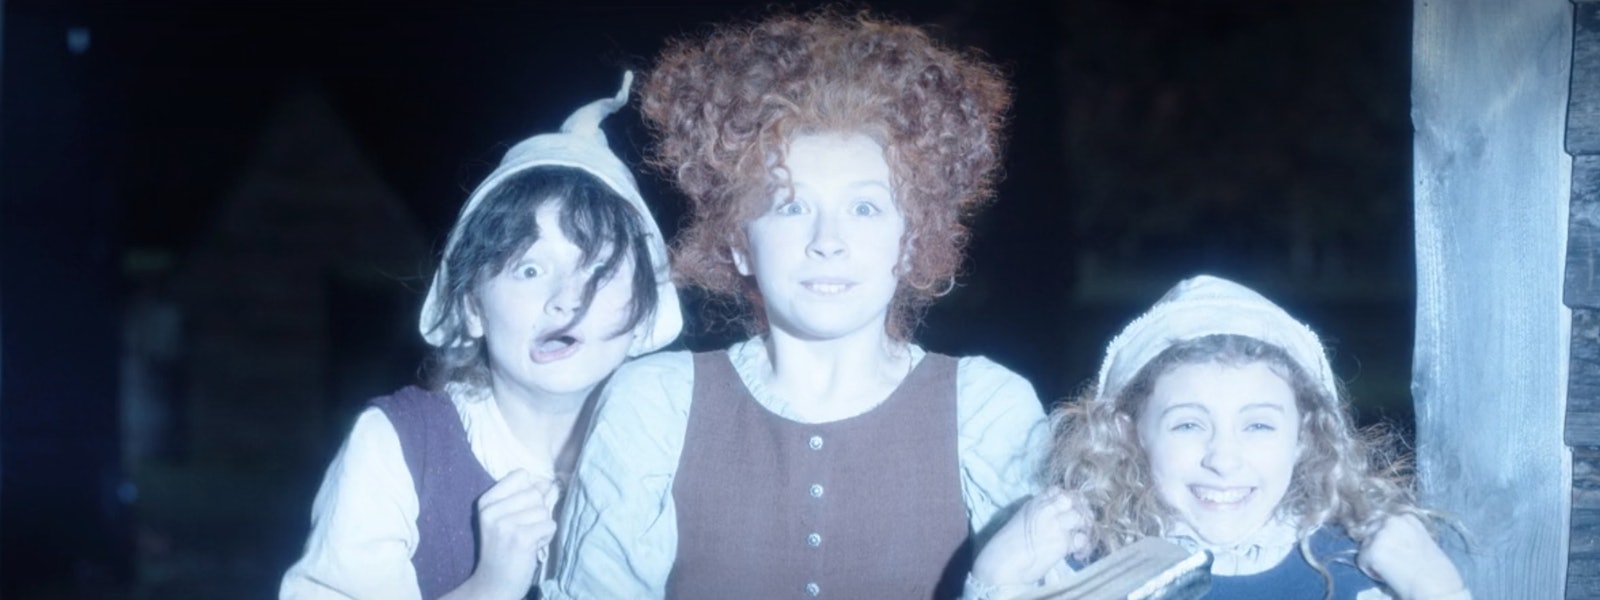 Sanderson Sisters as kids in 'Hocus Pocus 2'